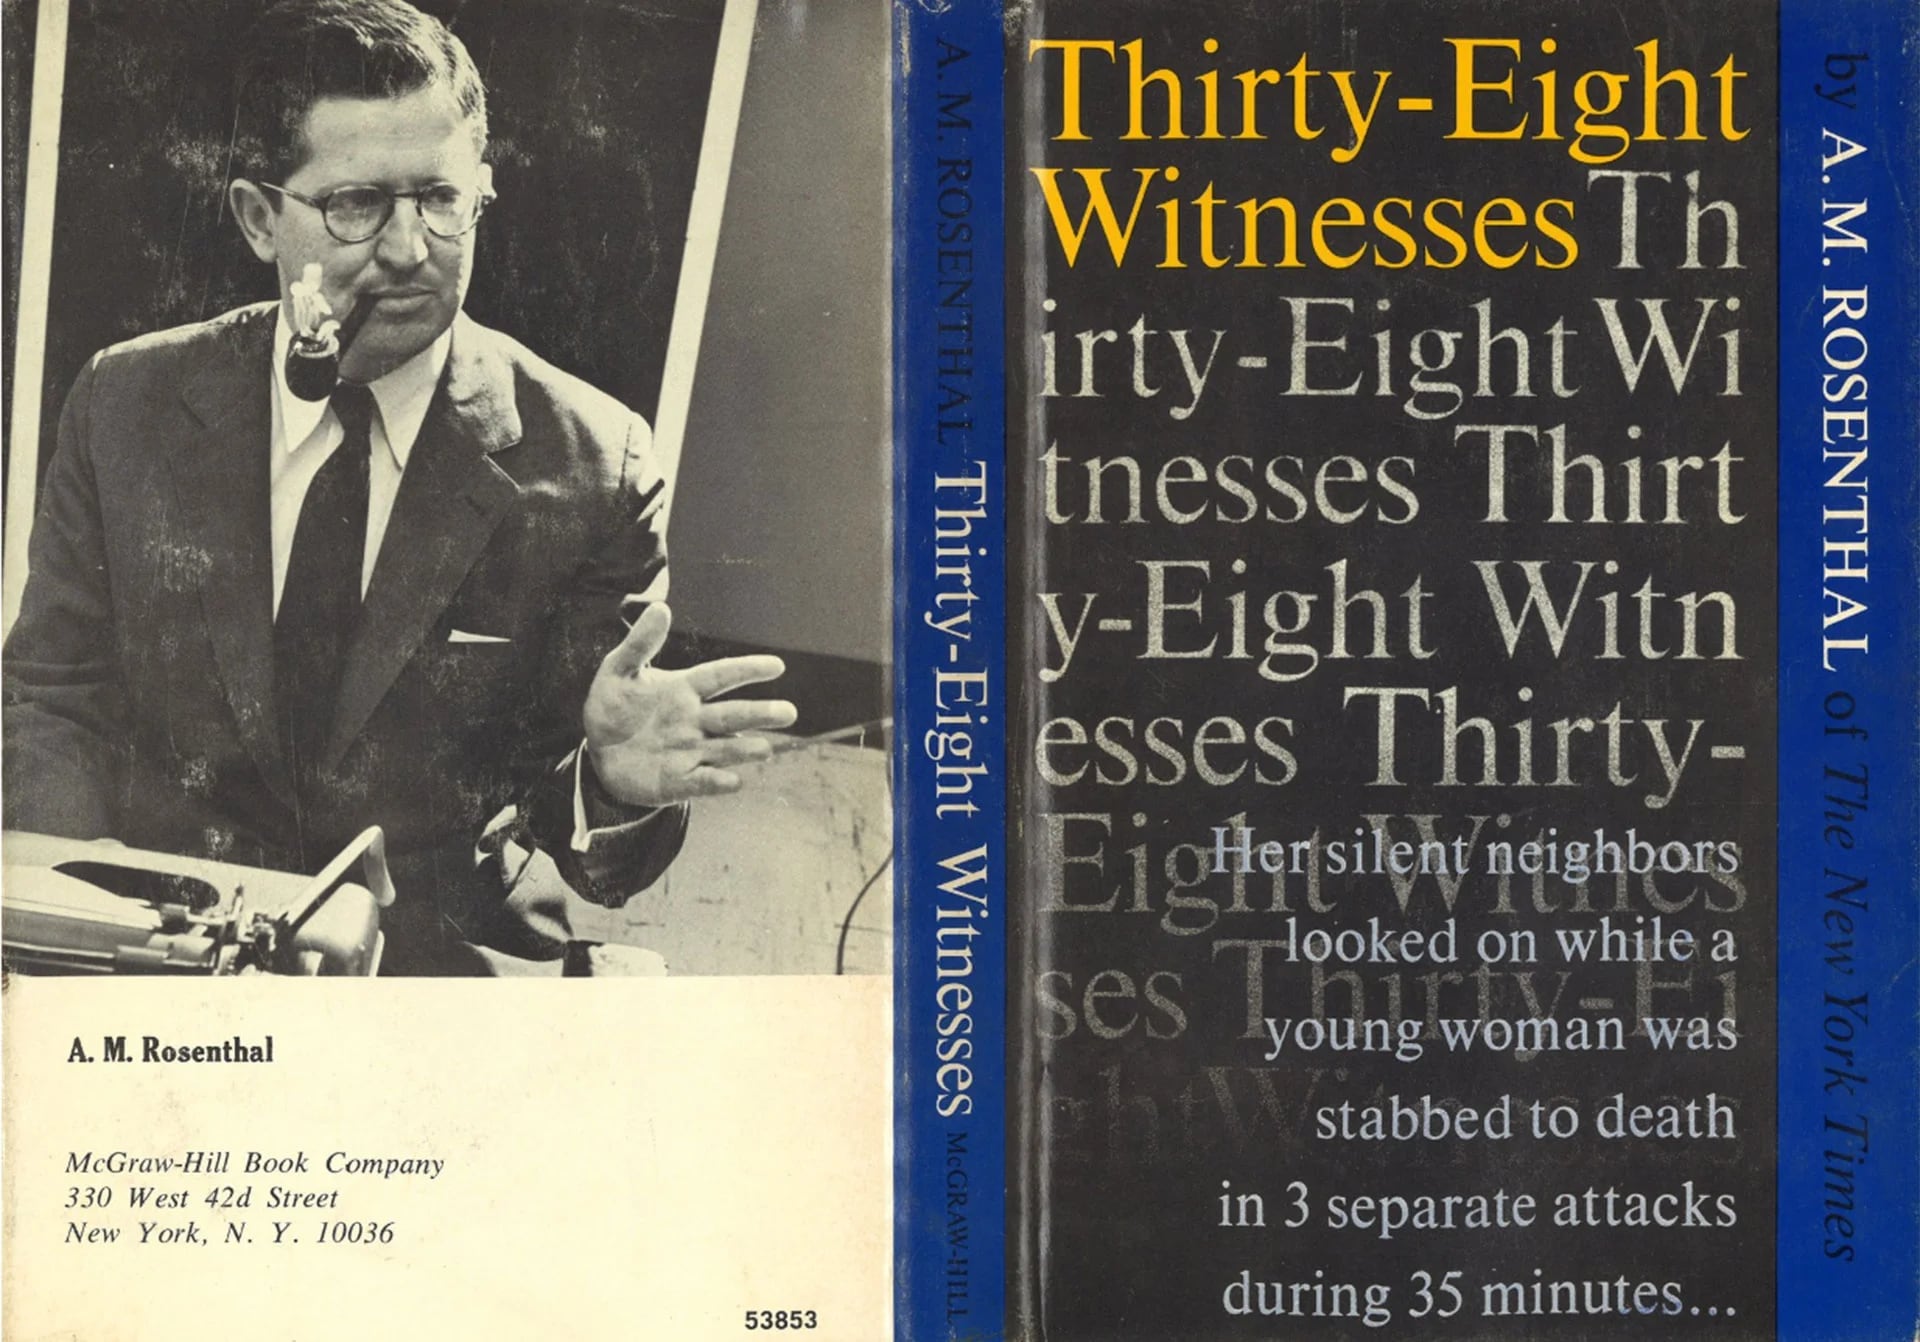 El libro ’38 testigos’ fue publicado meses después de la muerte de Kitty Genovese